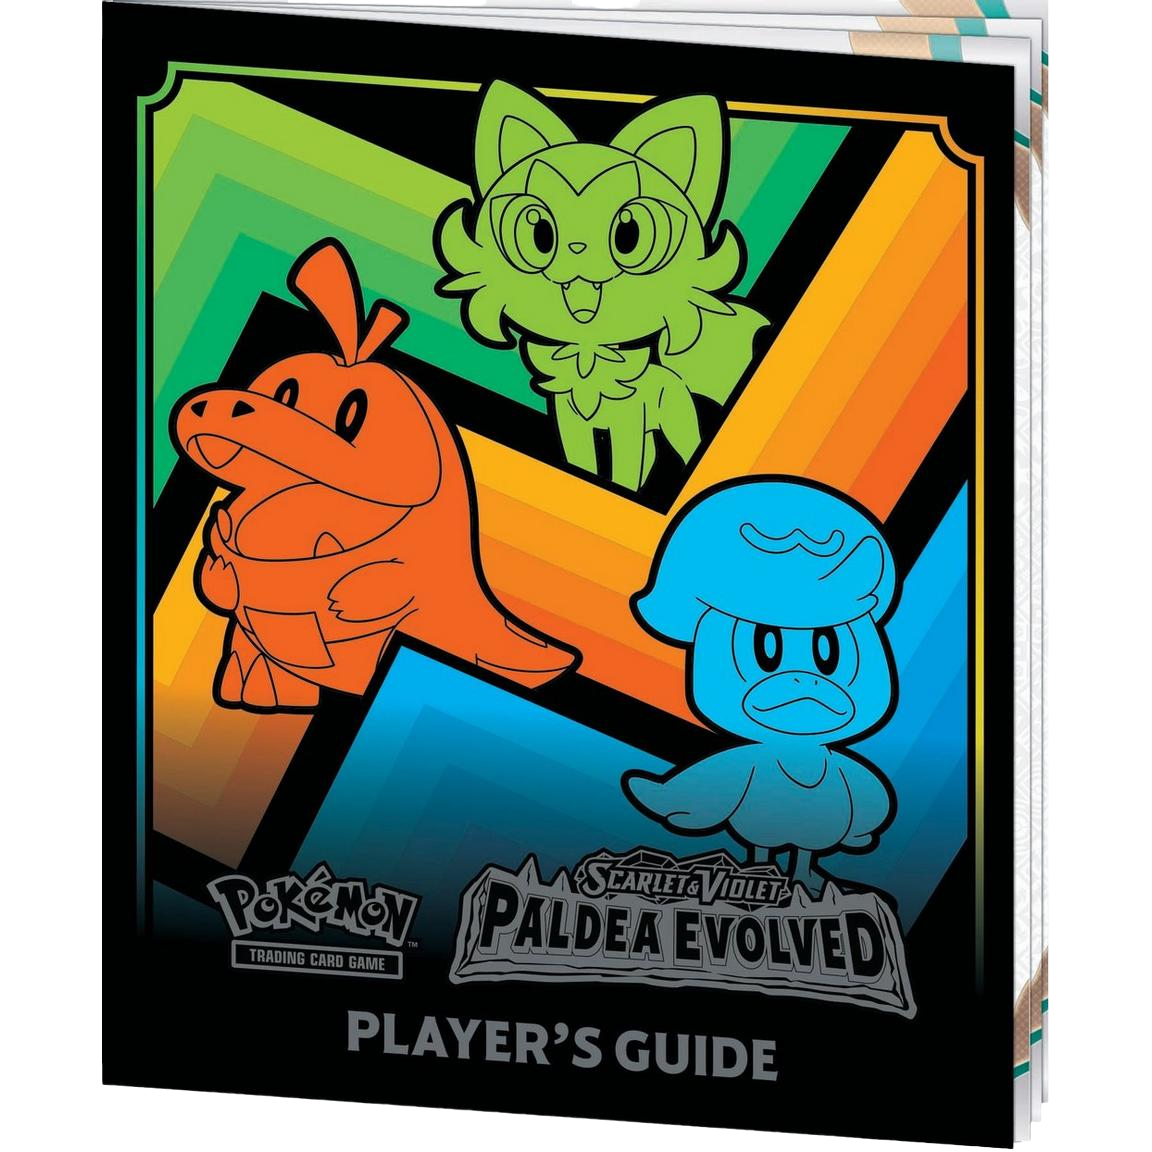 Pokémon TCG: Scarlet & Violet - Paldea Evolved Elite Trainer Box